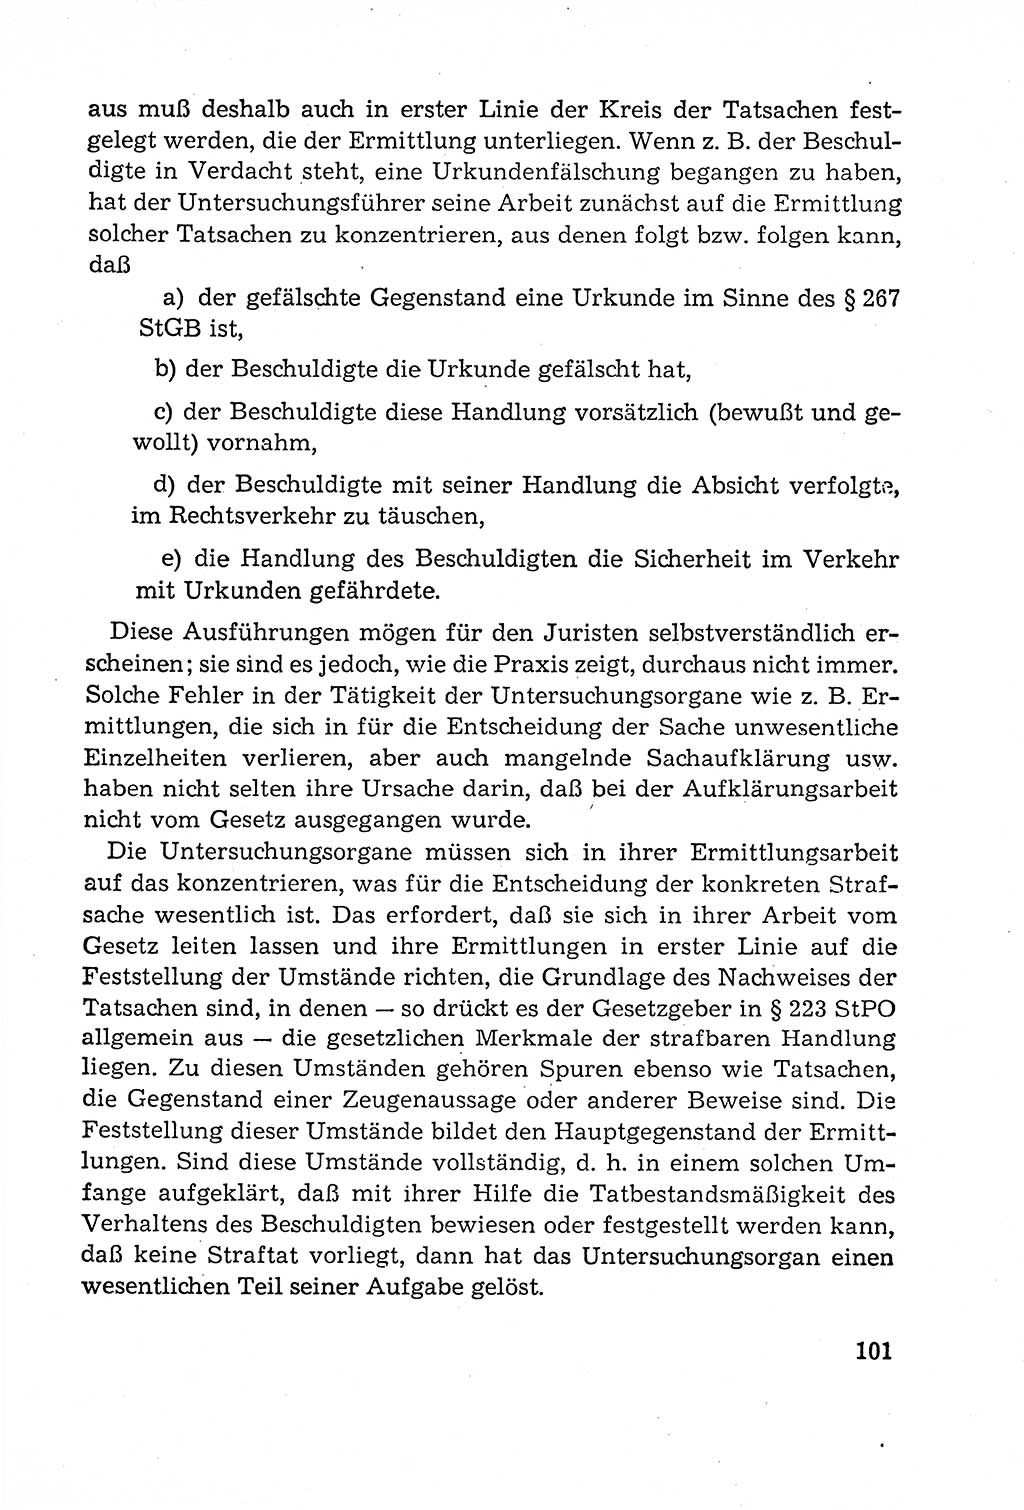 Leitfaden des Strafprozeßrechts der Deutschen Demokratischen Republik (DDR) 1959, Seite 101 (LF StPR DDR 1959, S. 101)